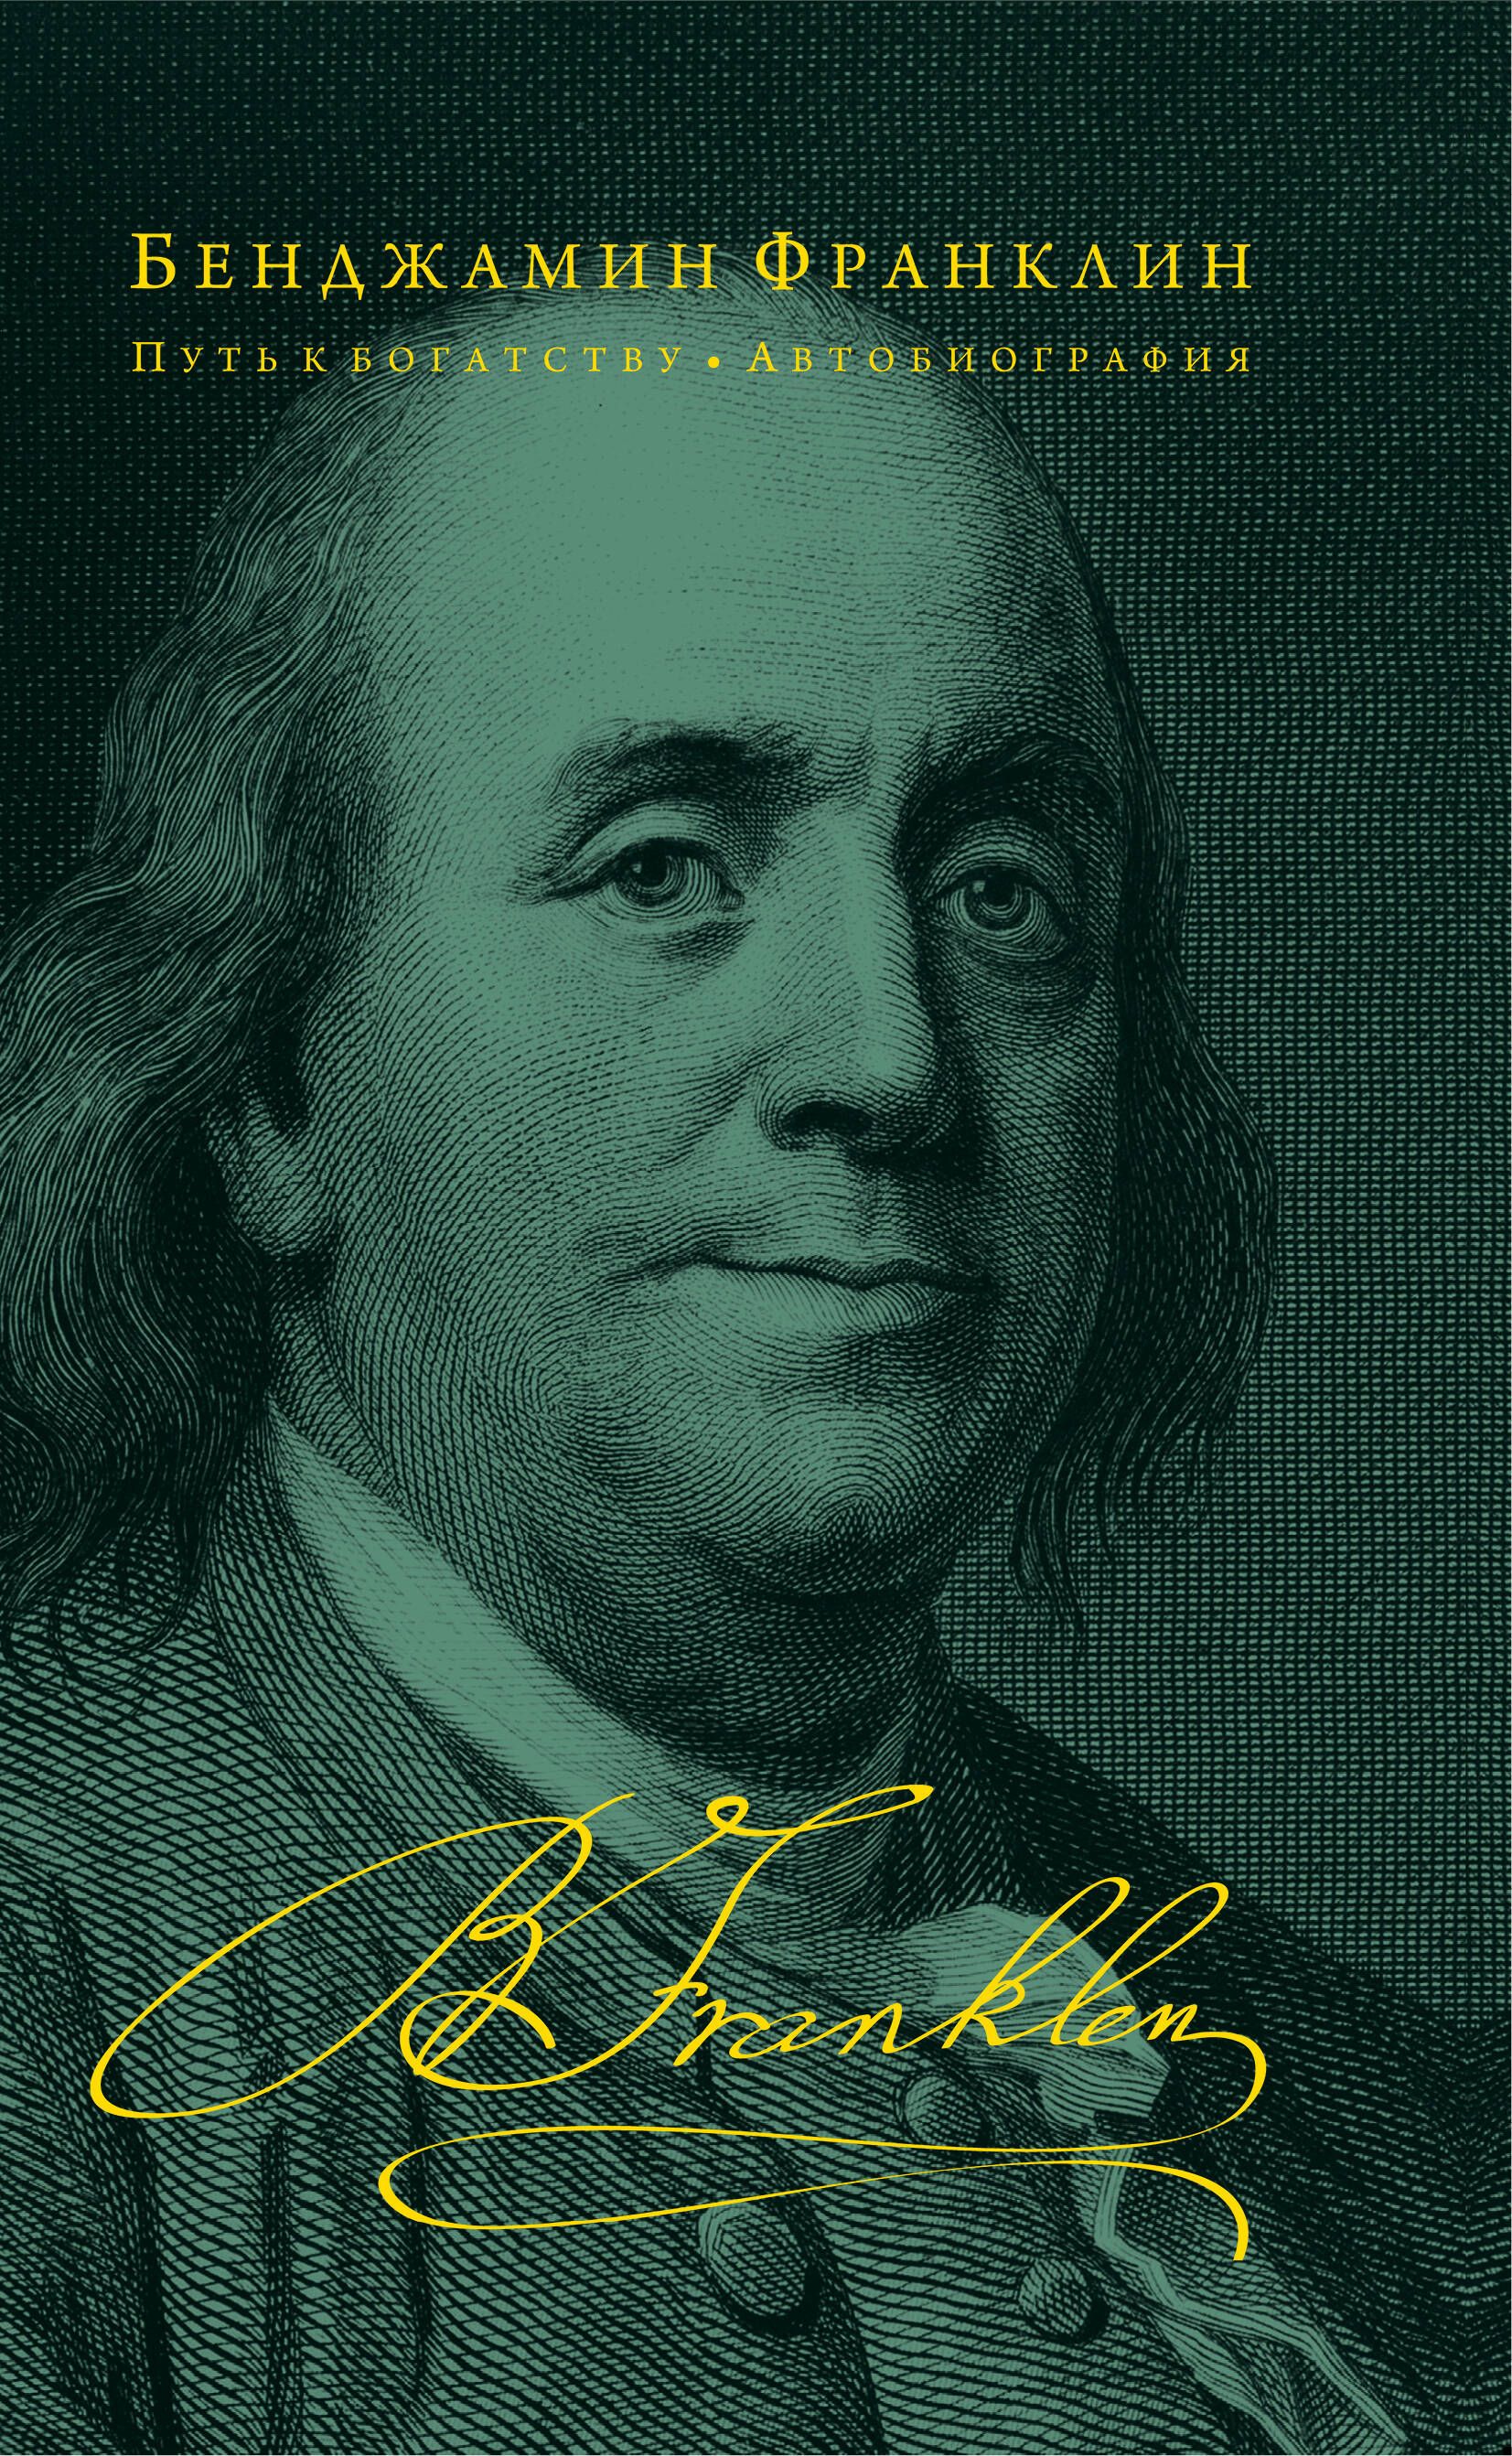 Время деньги франклин. Бенджамин Франклин путь к богатству. Бенджамин Франклин путь к богатству автобиография. Книга Бенджамина Франклина путь к богатству. Франклин автобиография книга.